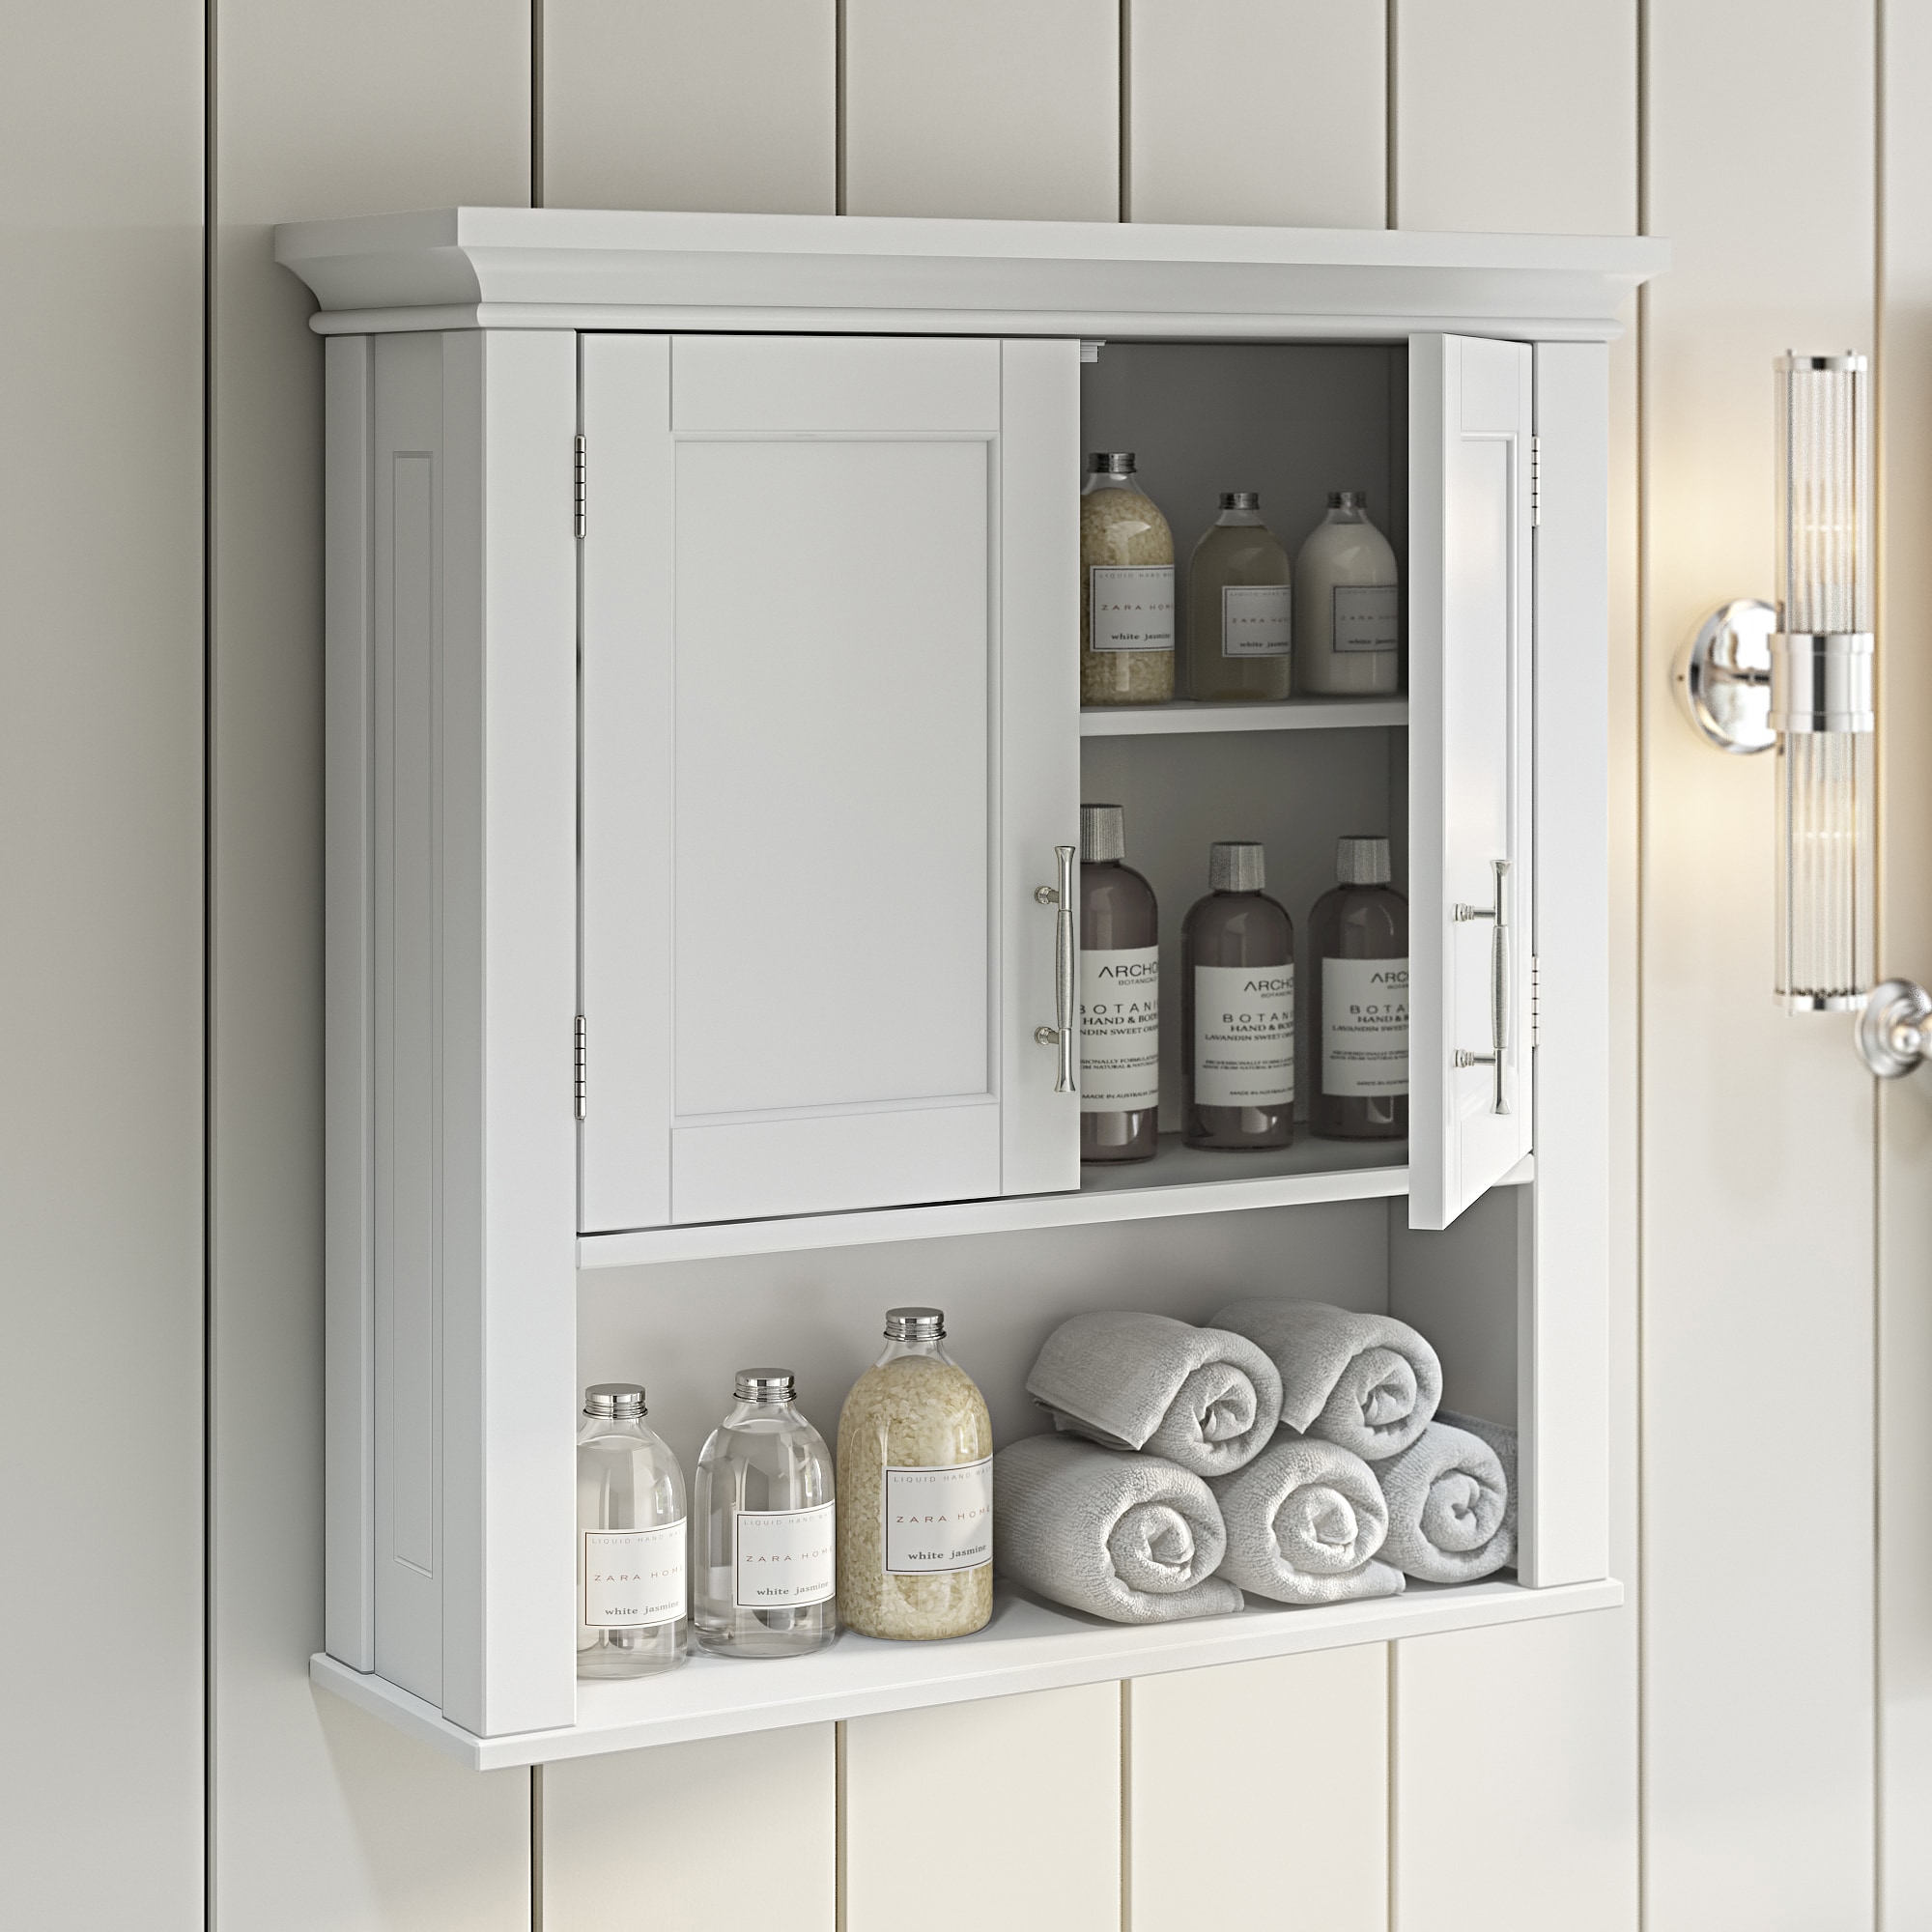 RiverRidge Somerset 22.81-in W x 24.5-in H x 7.88-in D White Bathroom Wall Cabinet